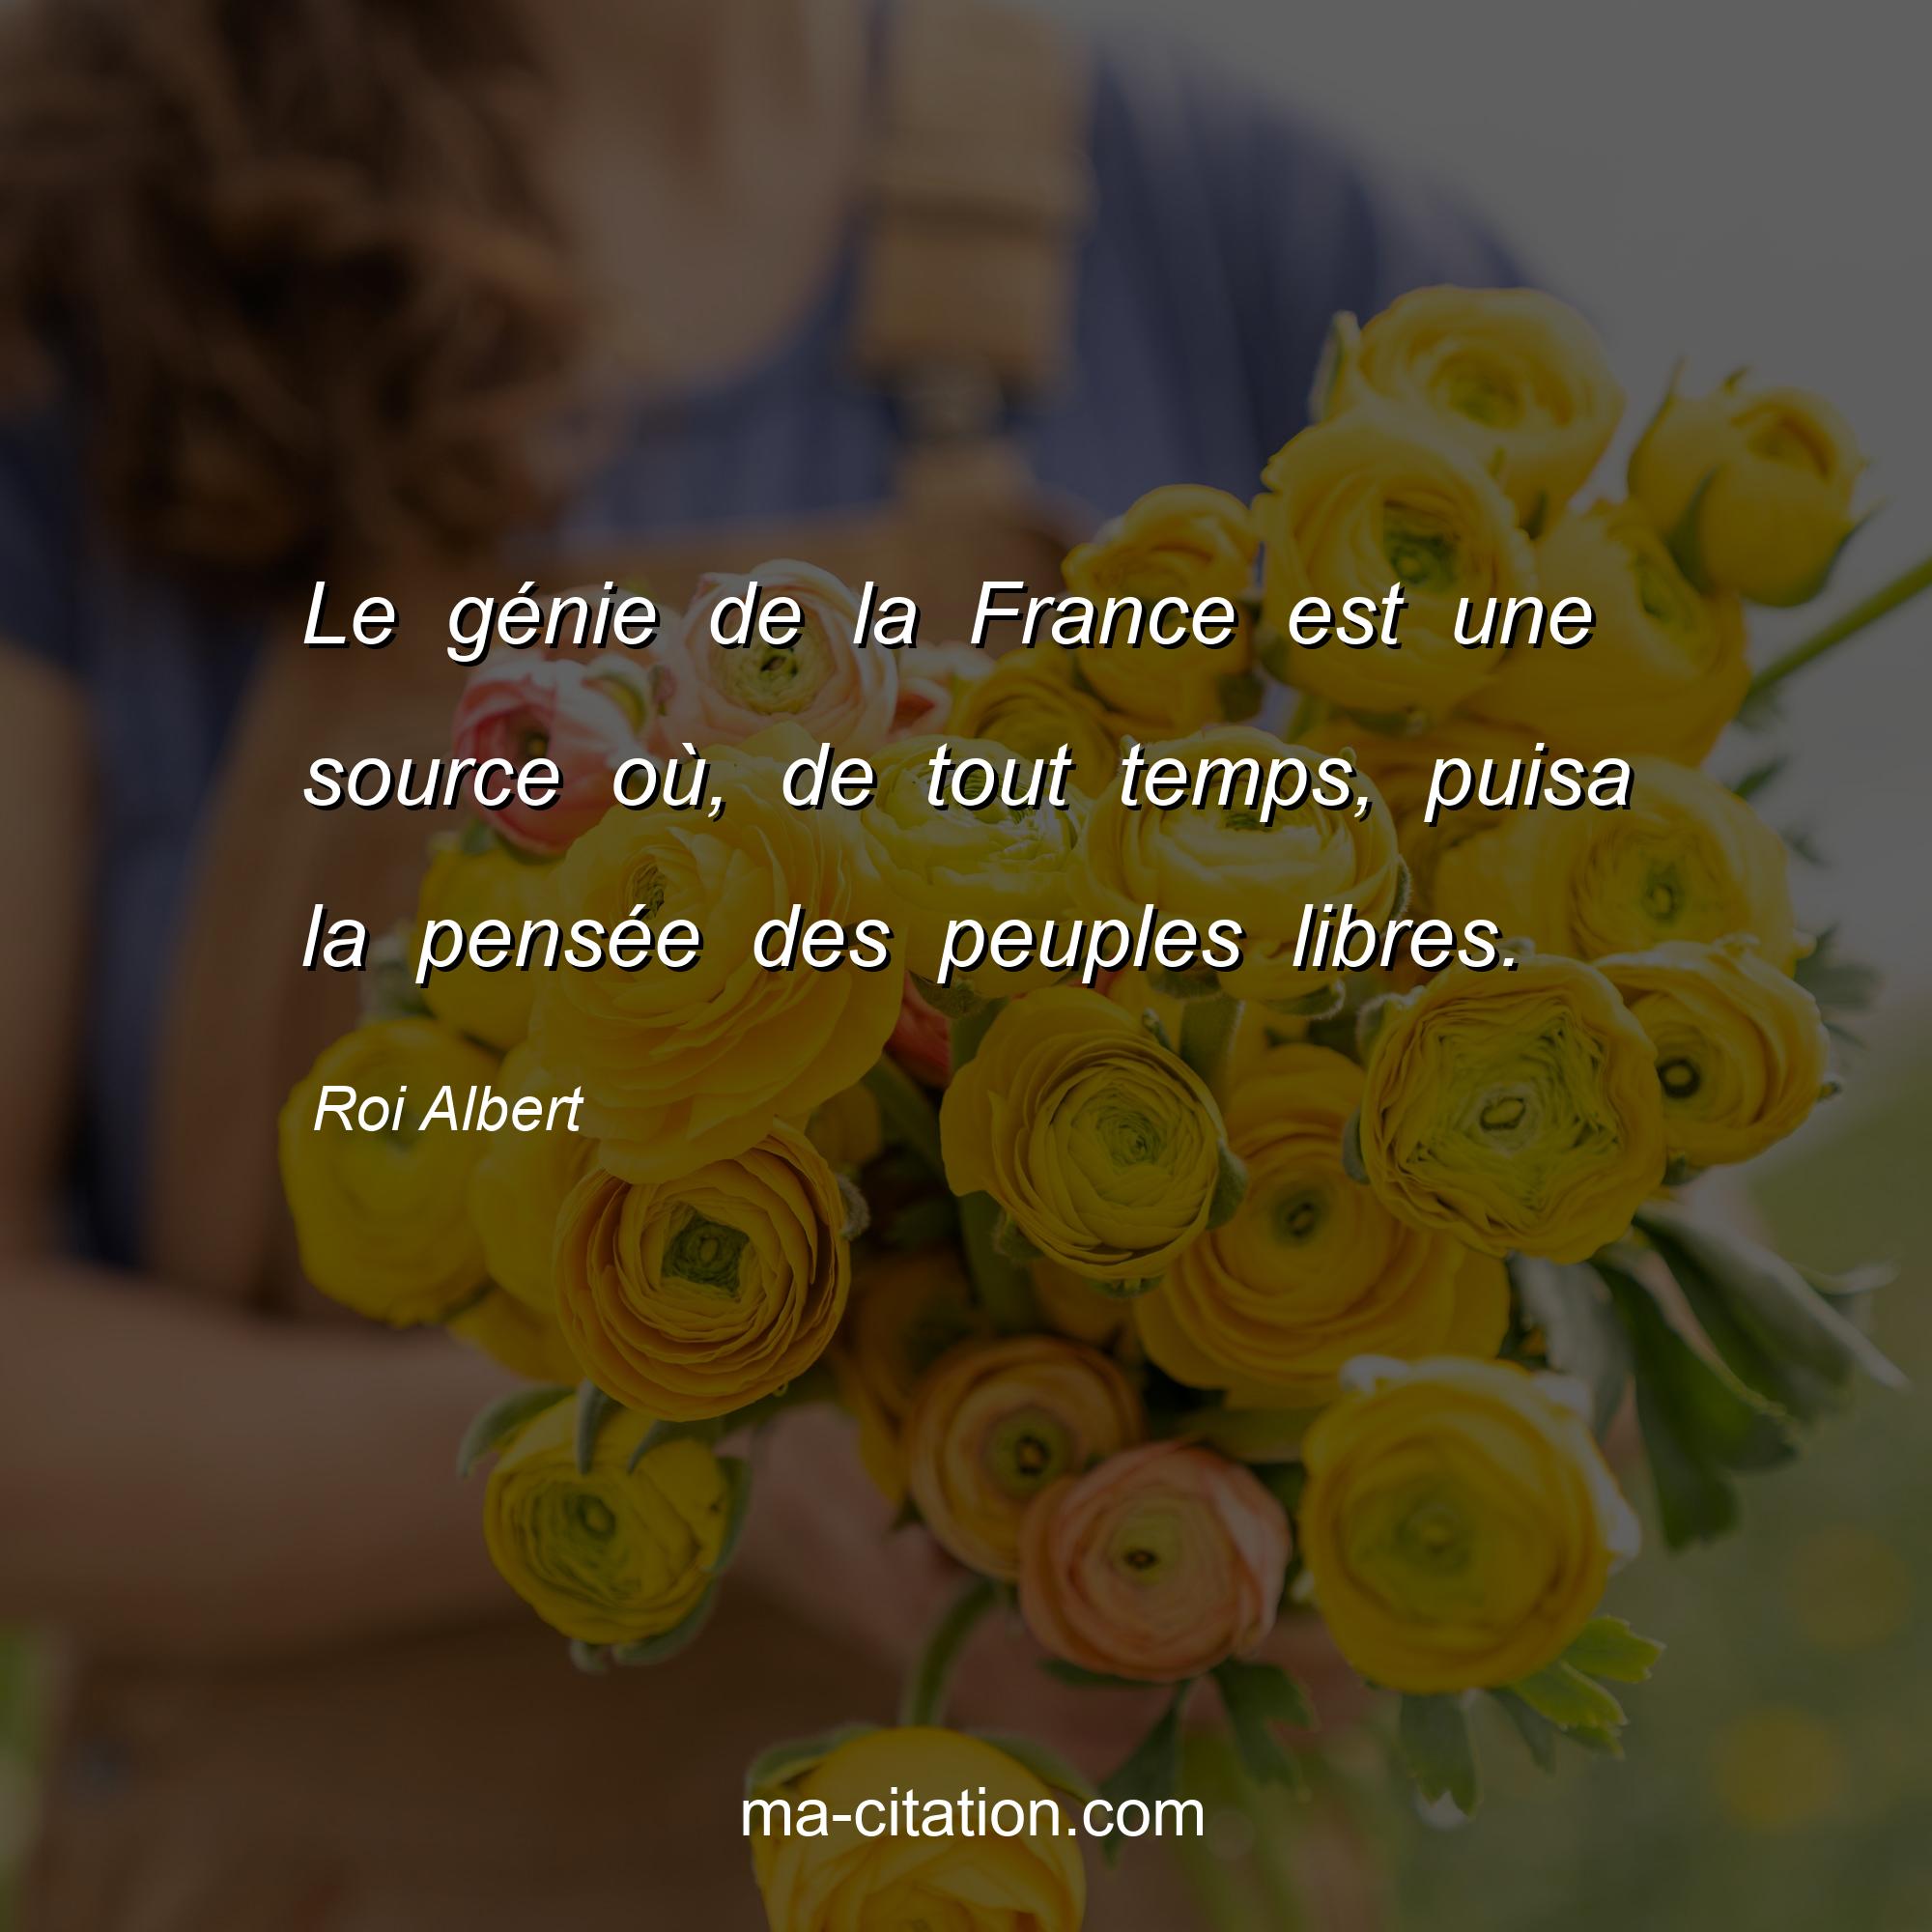 Roi Albert : Le génie de la France est une source où, de tout temps, puisa la pensée des peuples libres.